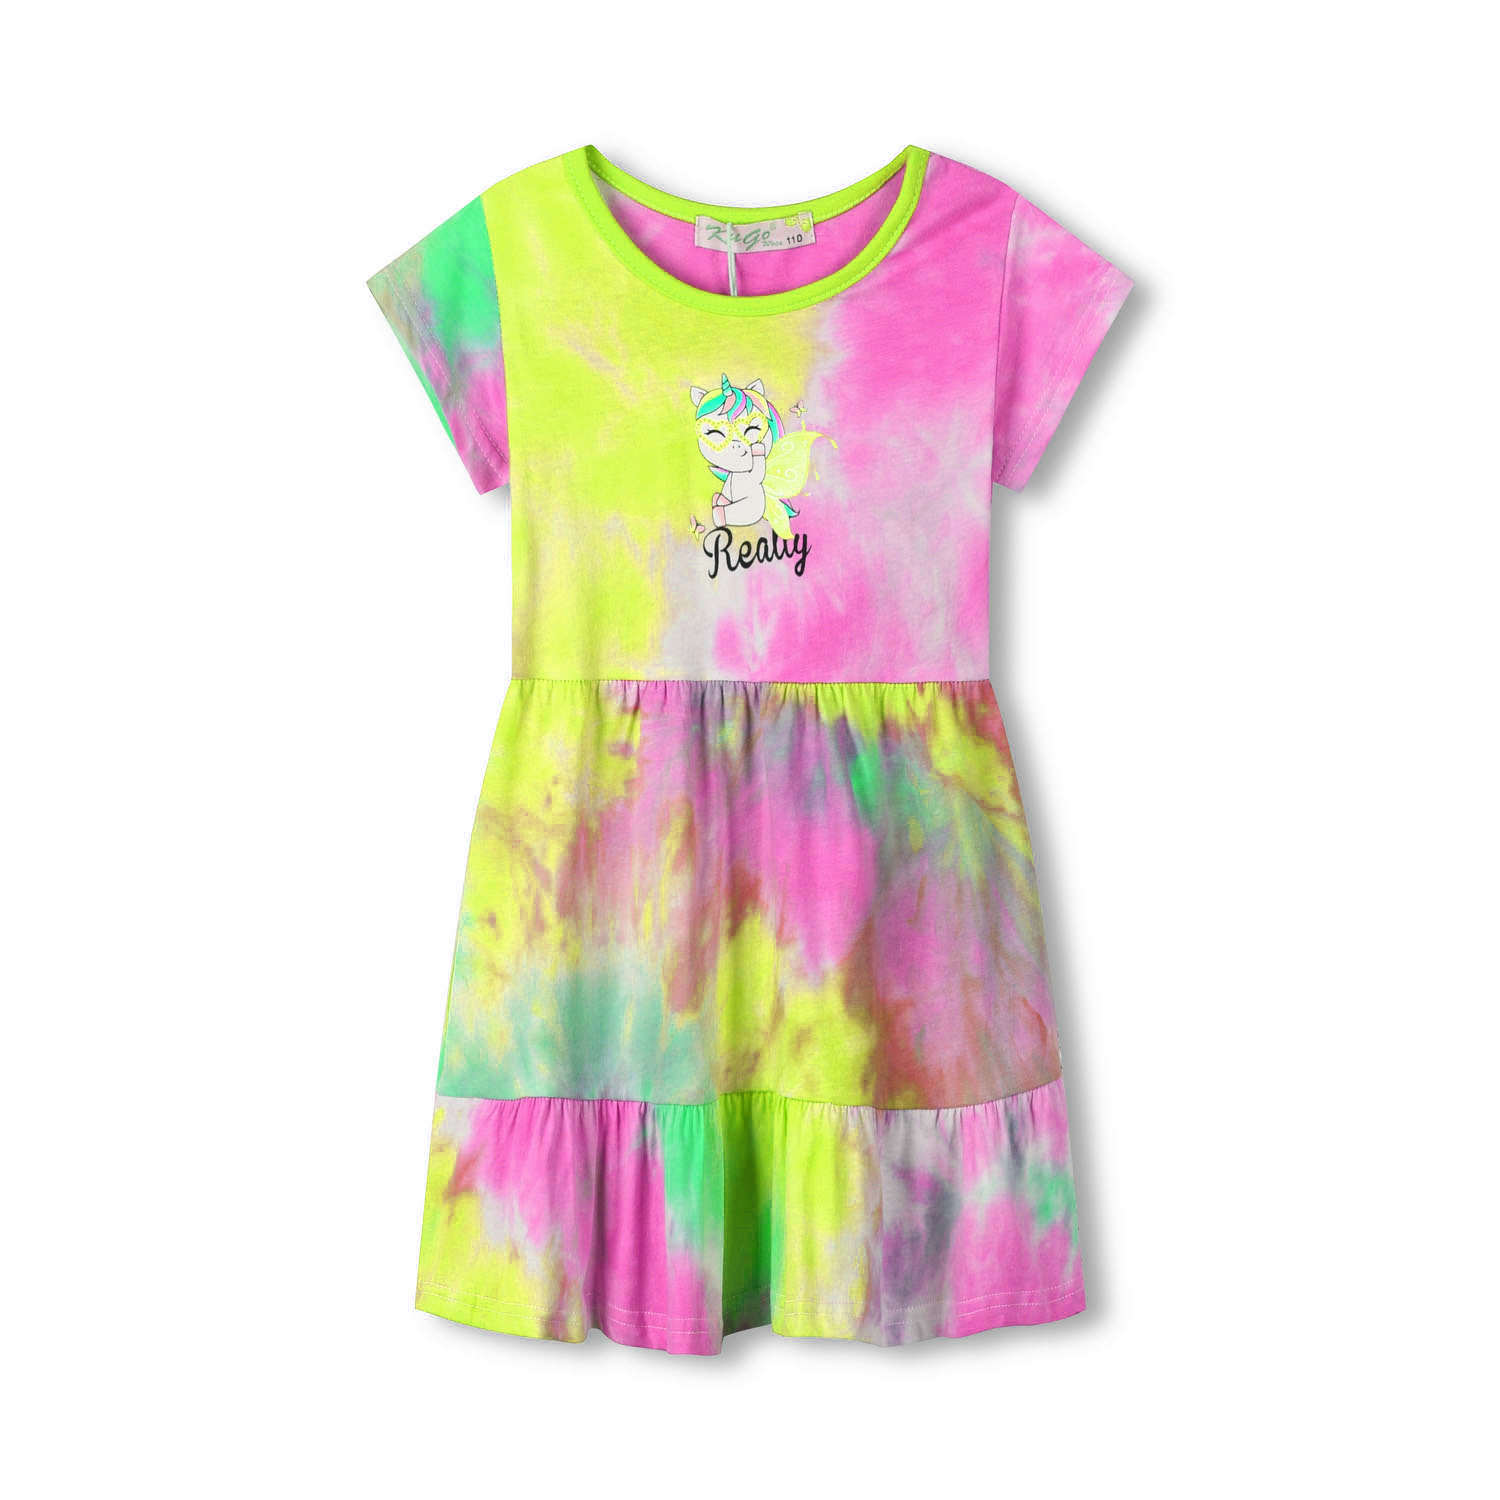 Dívčí šaty - KUGO TM7216, tyrkysová/ žlutá/ růžová Barva: Mix barev, Velikost: 104